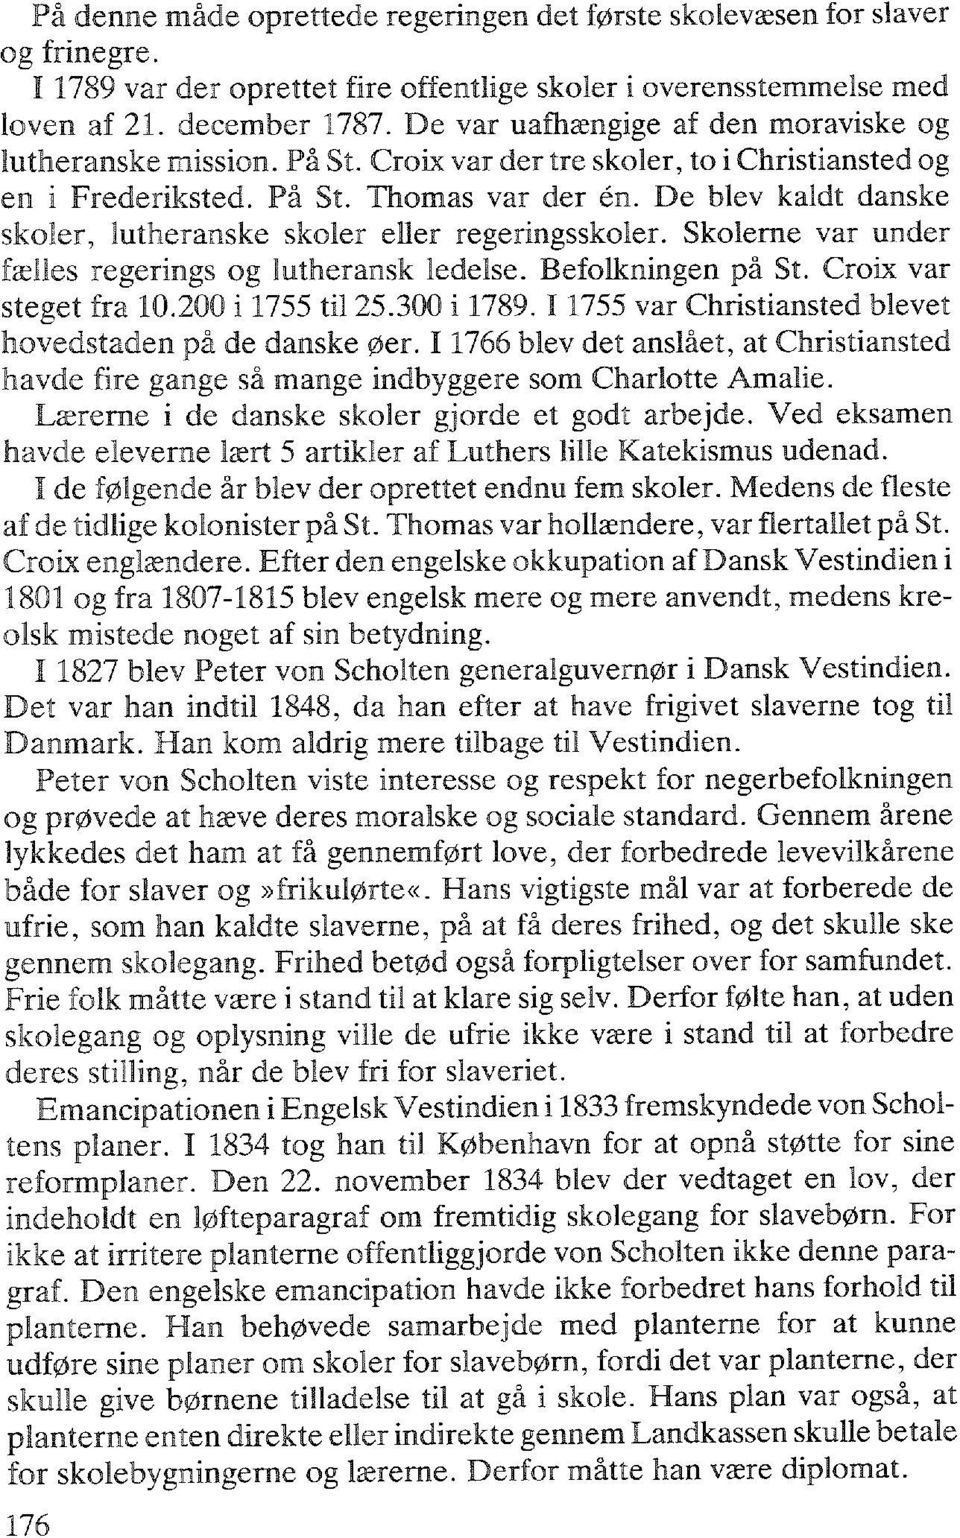 De blev kaldt danske skoler, lutheranske skoler eller regeringsskoler. Skolerne var under fælles regerings og lutheransk ledelse. Befolkningen på St. Croix var steget fra 10.200 i 1755 til 25.